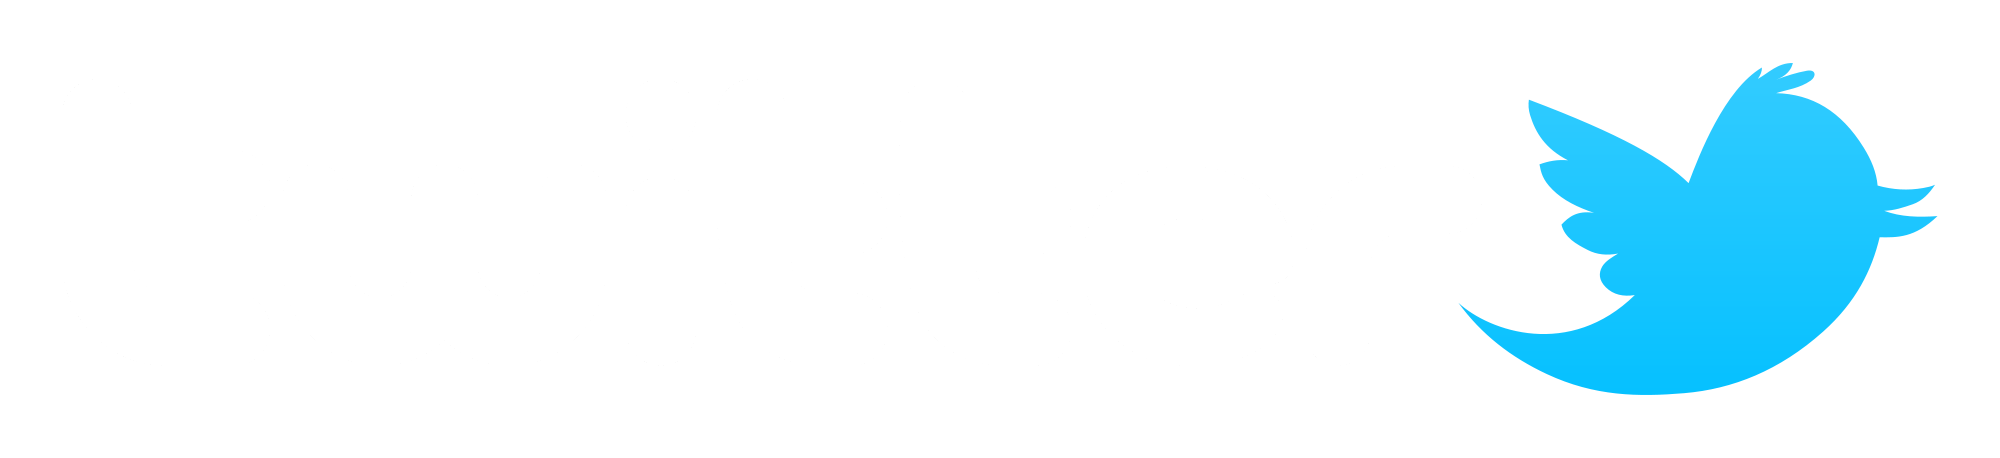 twitter logo black and white vector